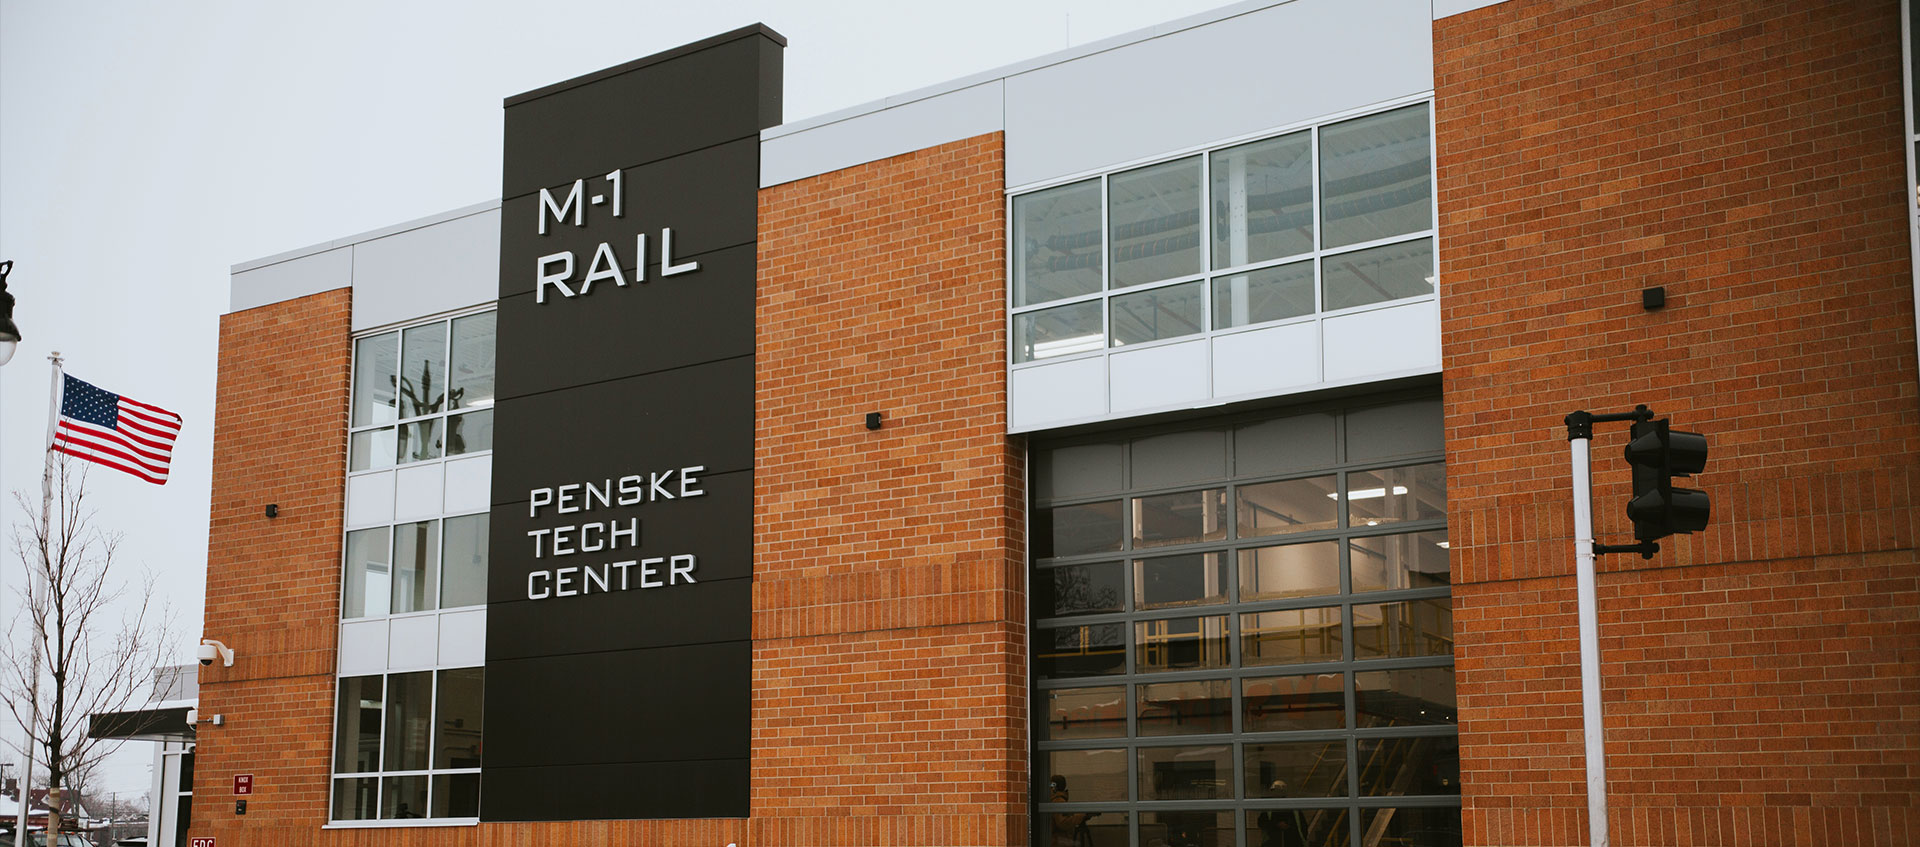 Penske Tech Center Facade